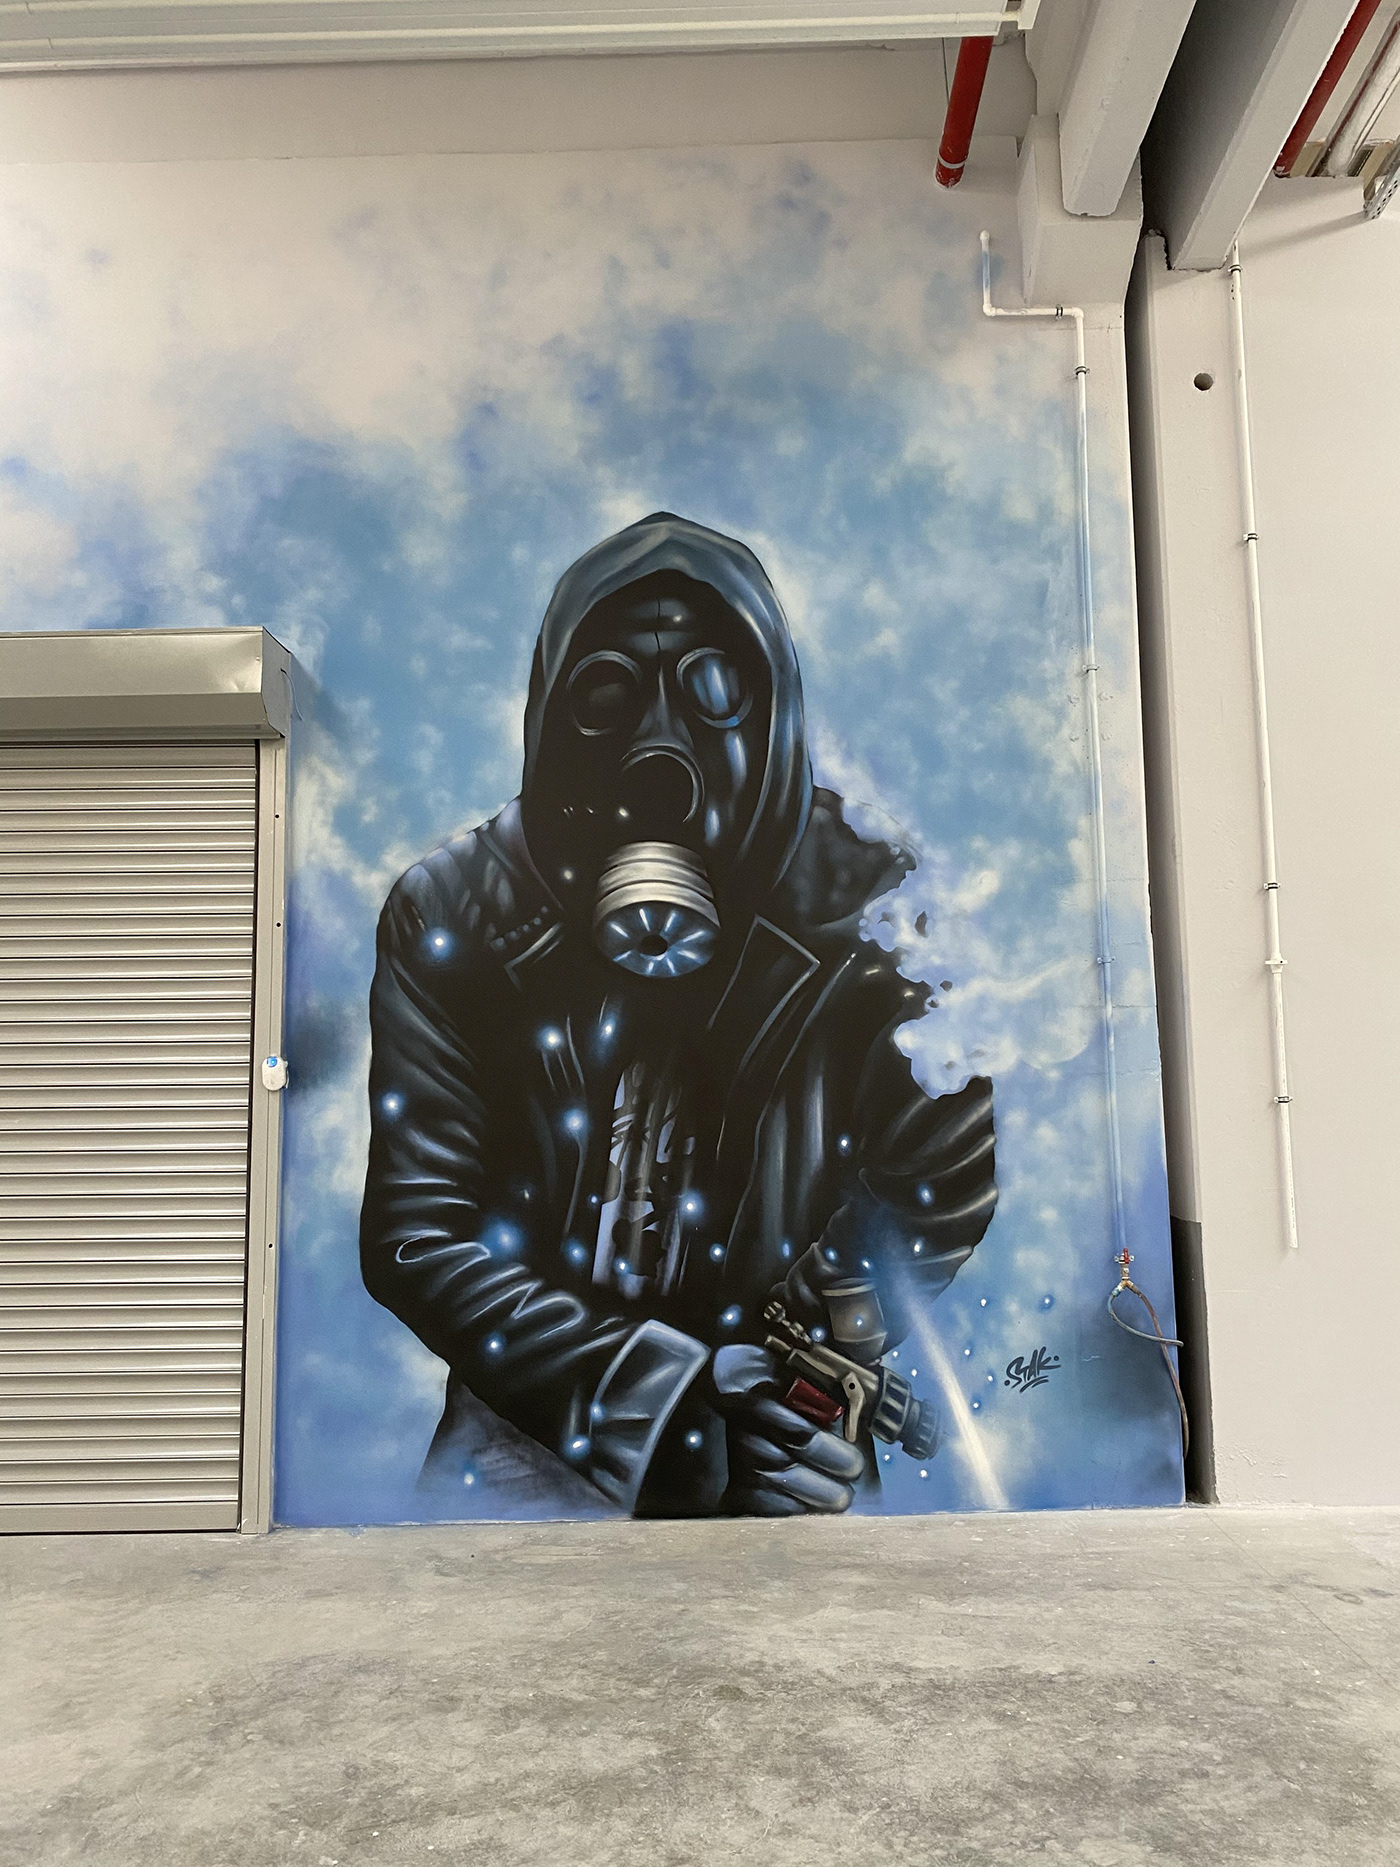 ankara ankara graffiti Drawing  duvar resmi gas mask Gasmask Graffiti Mural muralart painting  